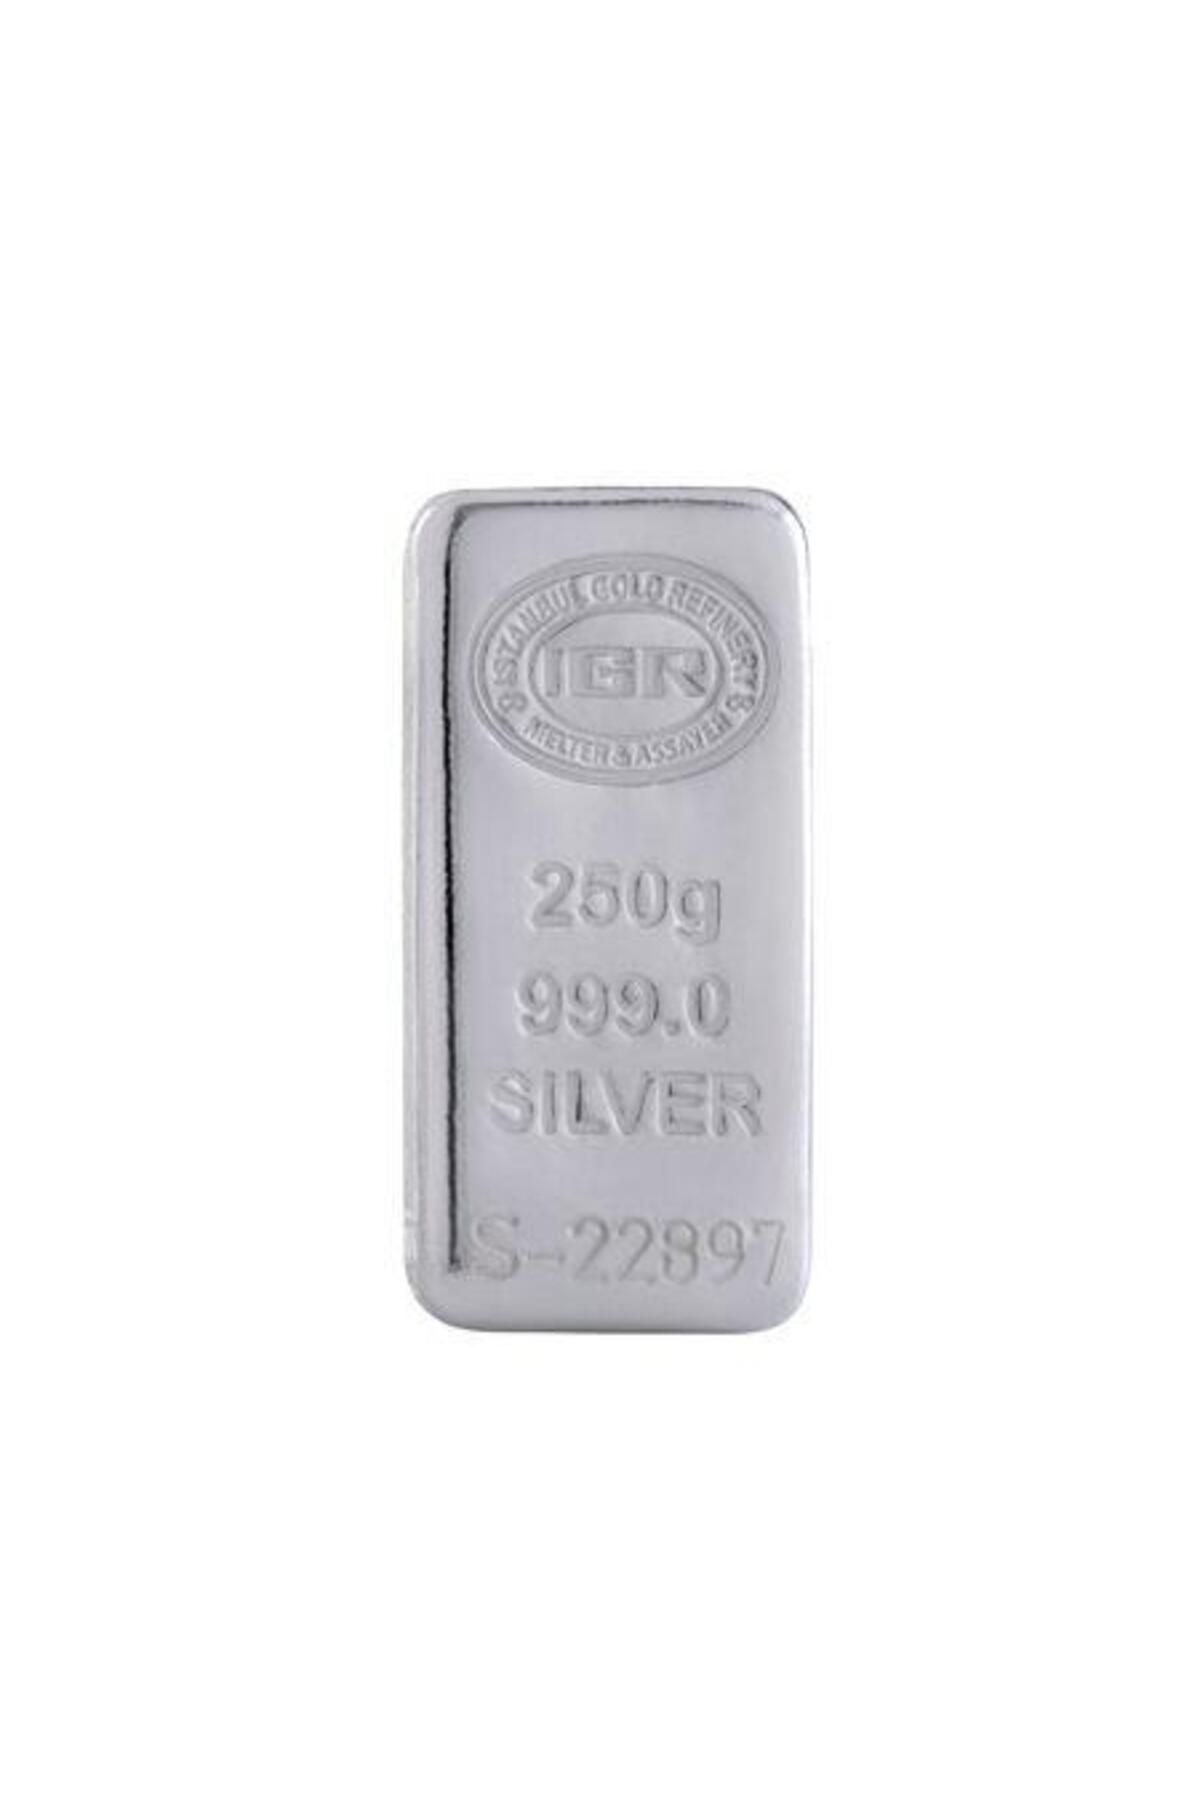 İar Agakulche Iar 250 gram Külçe Gümüş 999.0 Saflıkta